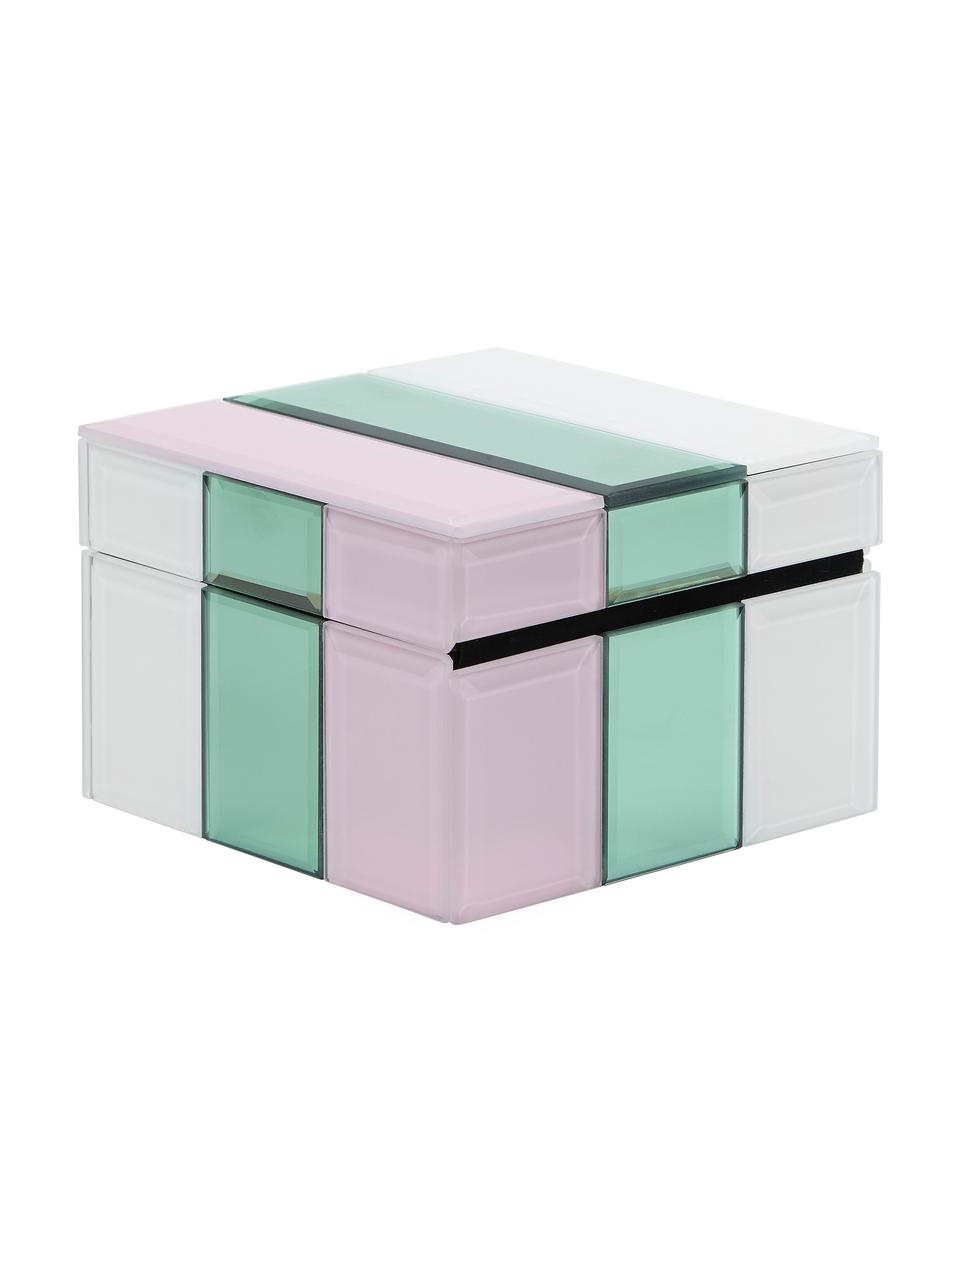 Sieradendoos Pastel van glas, Vezelplaat met gemiddelde dichtheid (MDF), glas, Wit, mintgroen, roze, B 13 x H 9 cm